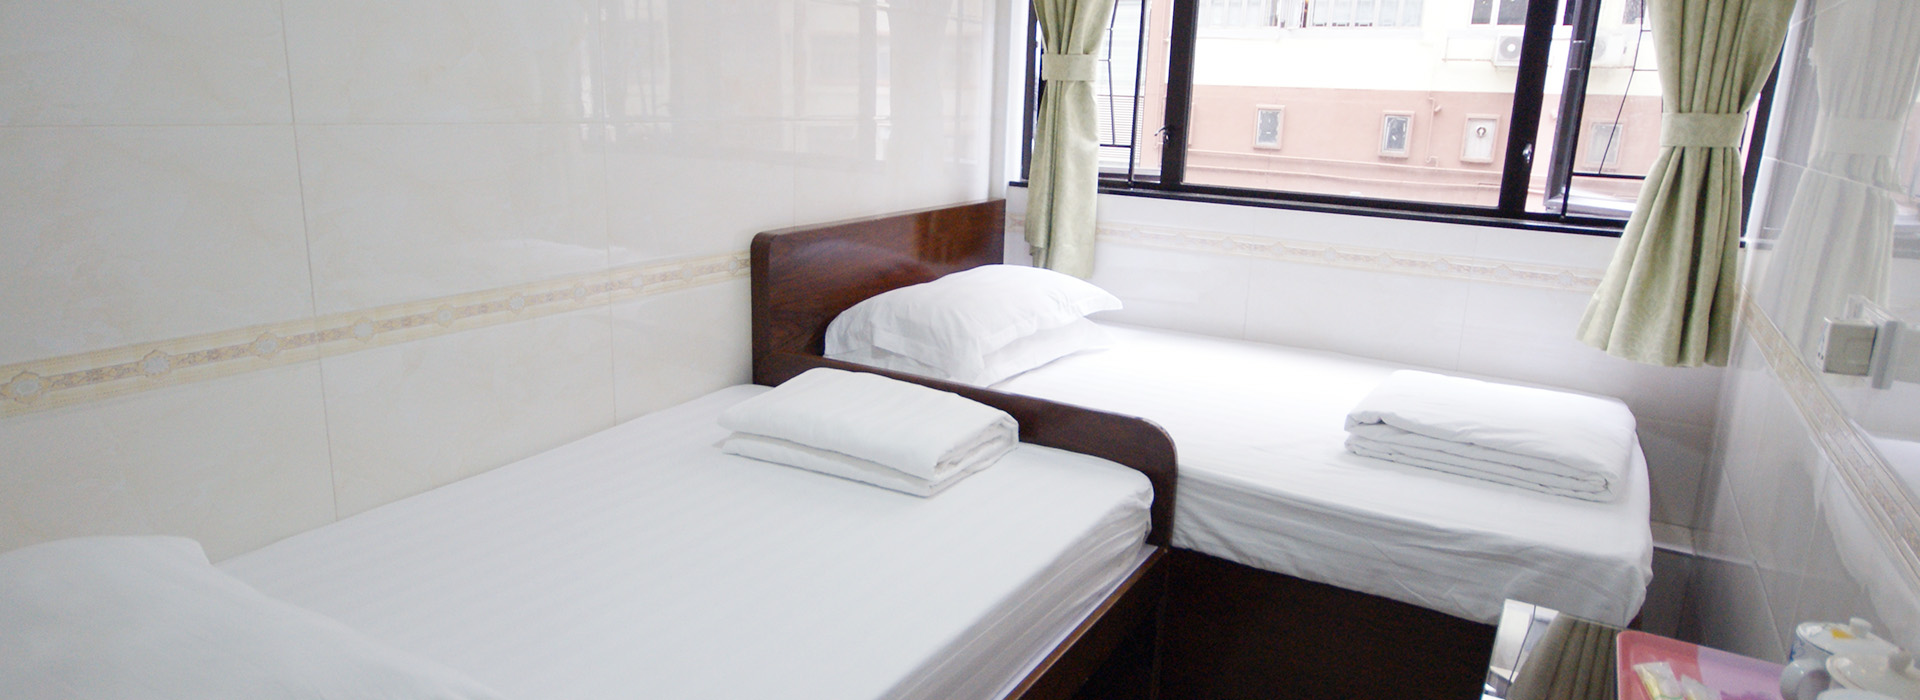 Fujian Guest House cheap hostel in Tsim Sha Tsui